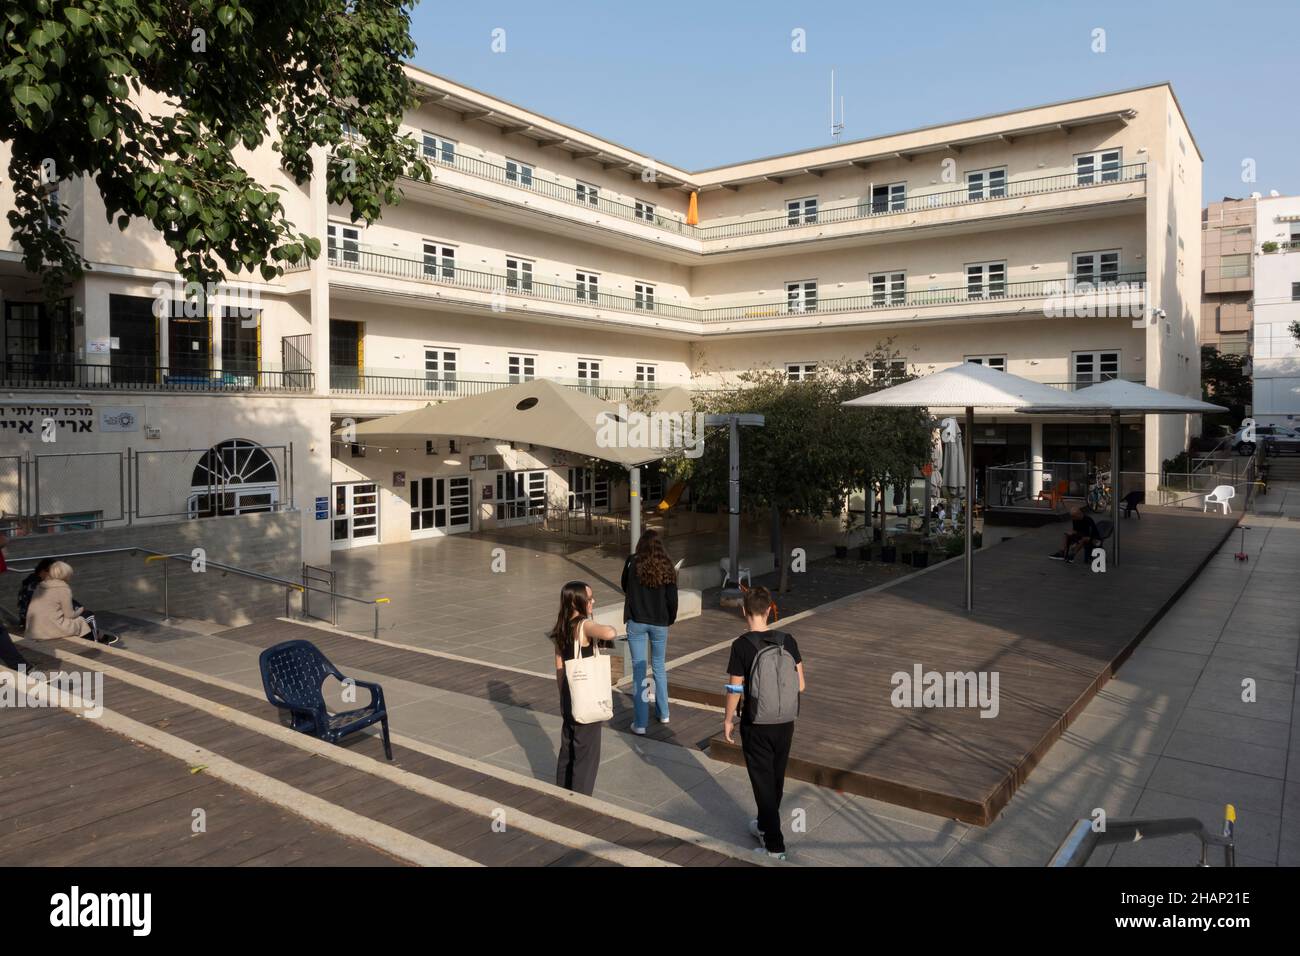 Un bâtiment rénové construit dans le style de l'architecture Bauhaus situé dans la rue Dov Hoz dans le centre-ville de tel Aviv Israël Banque D'Images